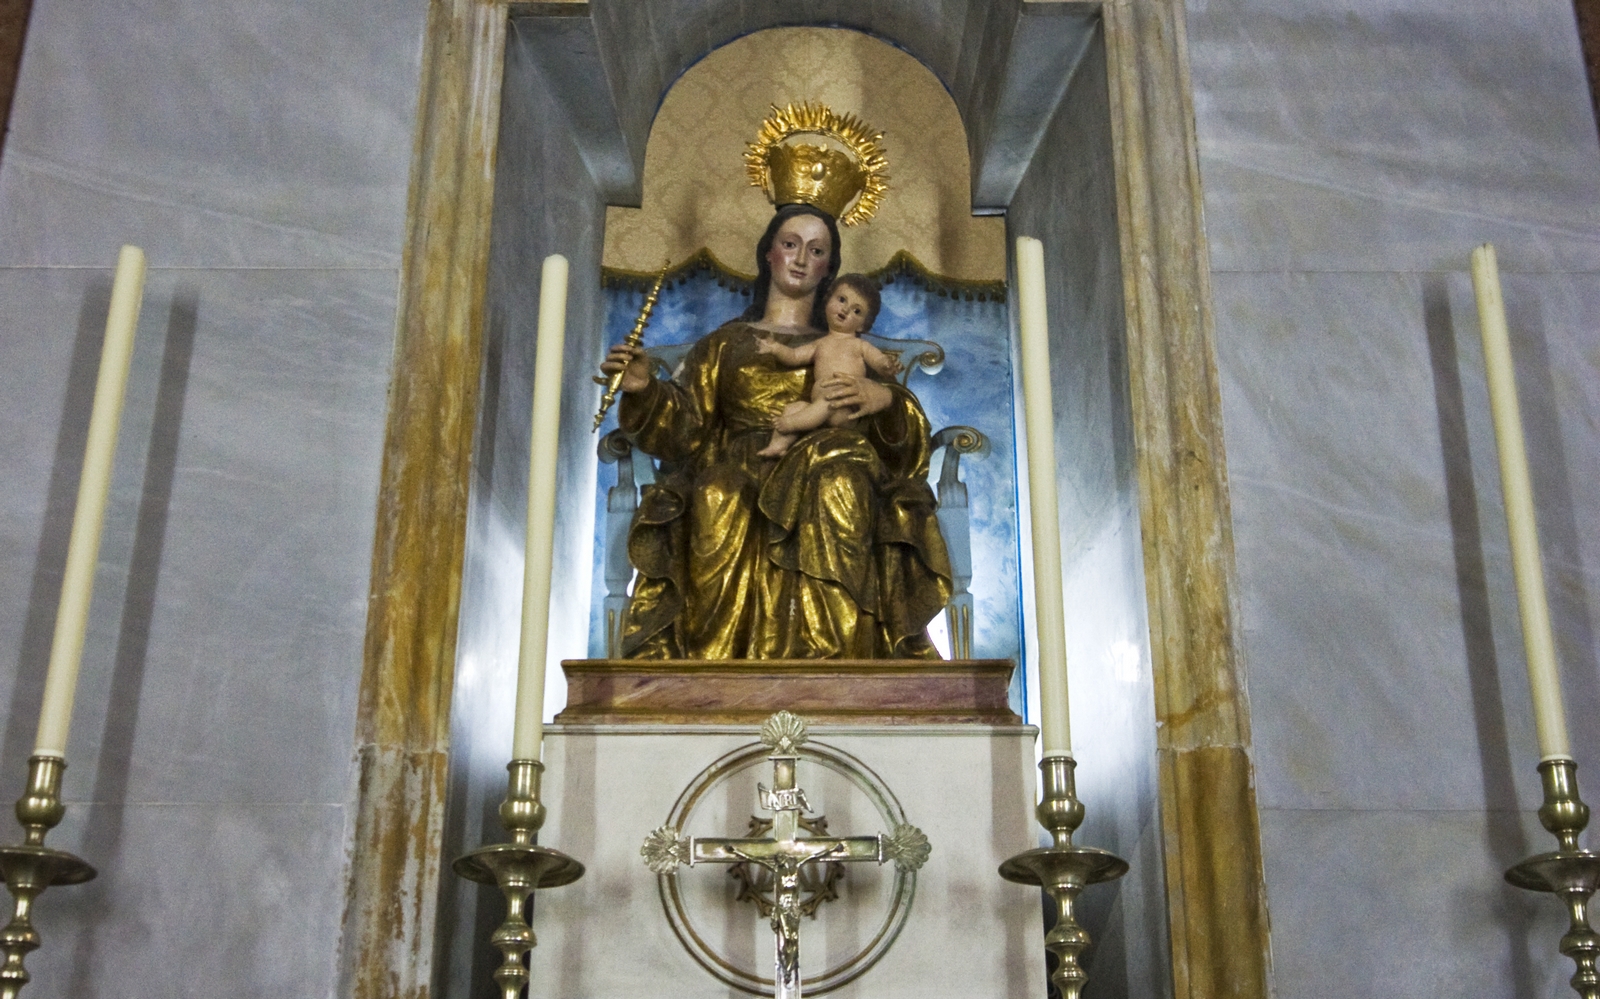 Nuestra Señora de Europa, 7 siglos Escondida por los Musulmanes, Gibraltar (5 may)